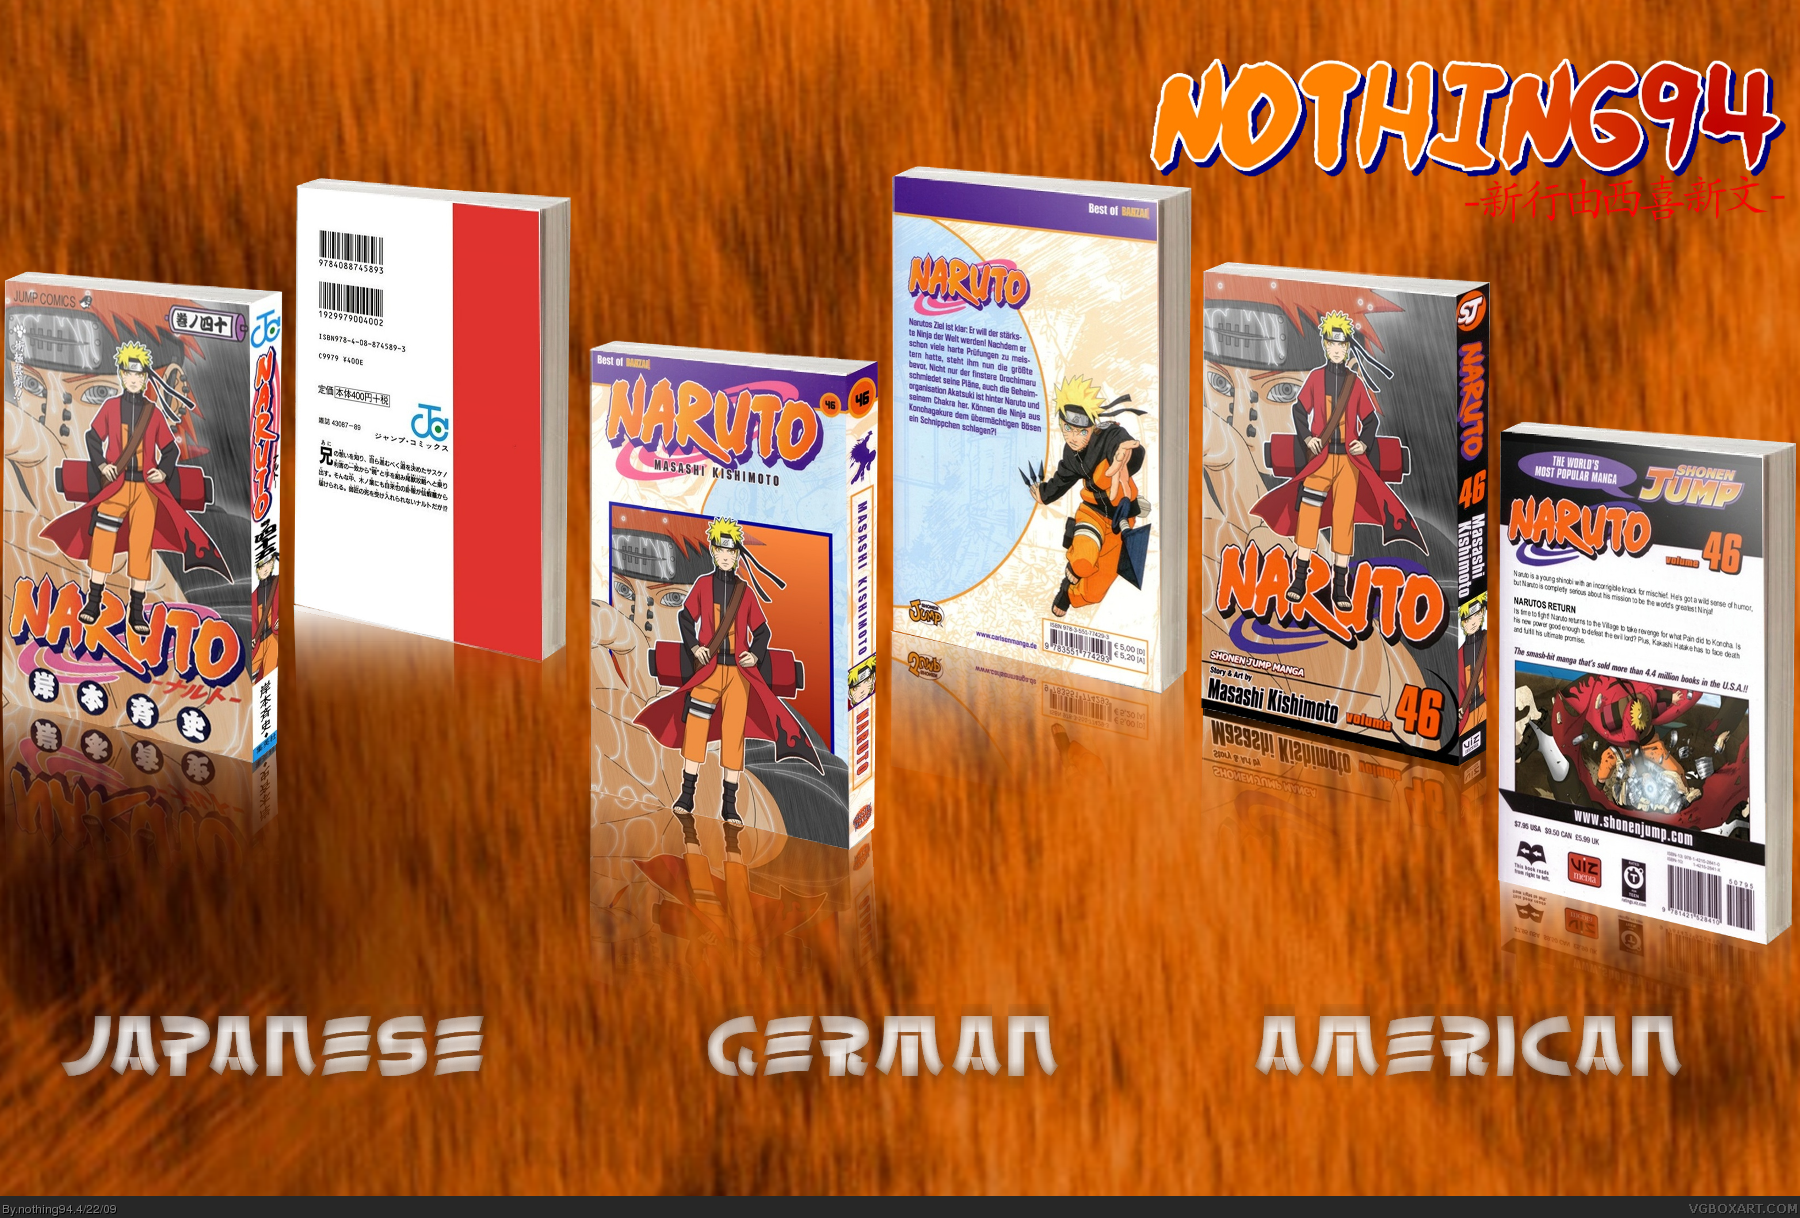 Naruto Volume 46 box cover